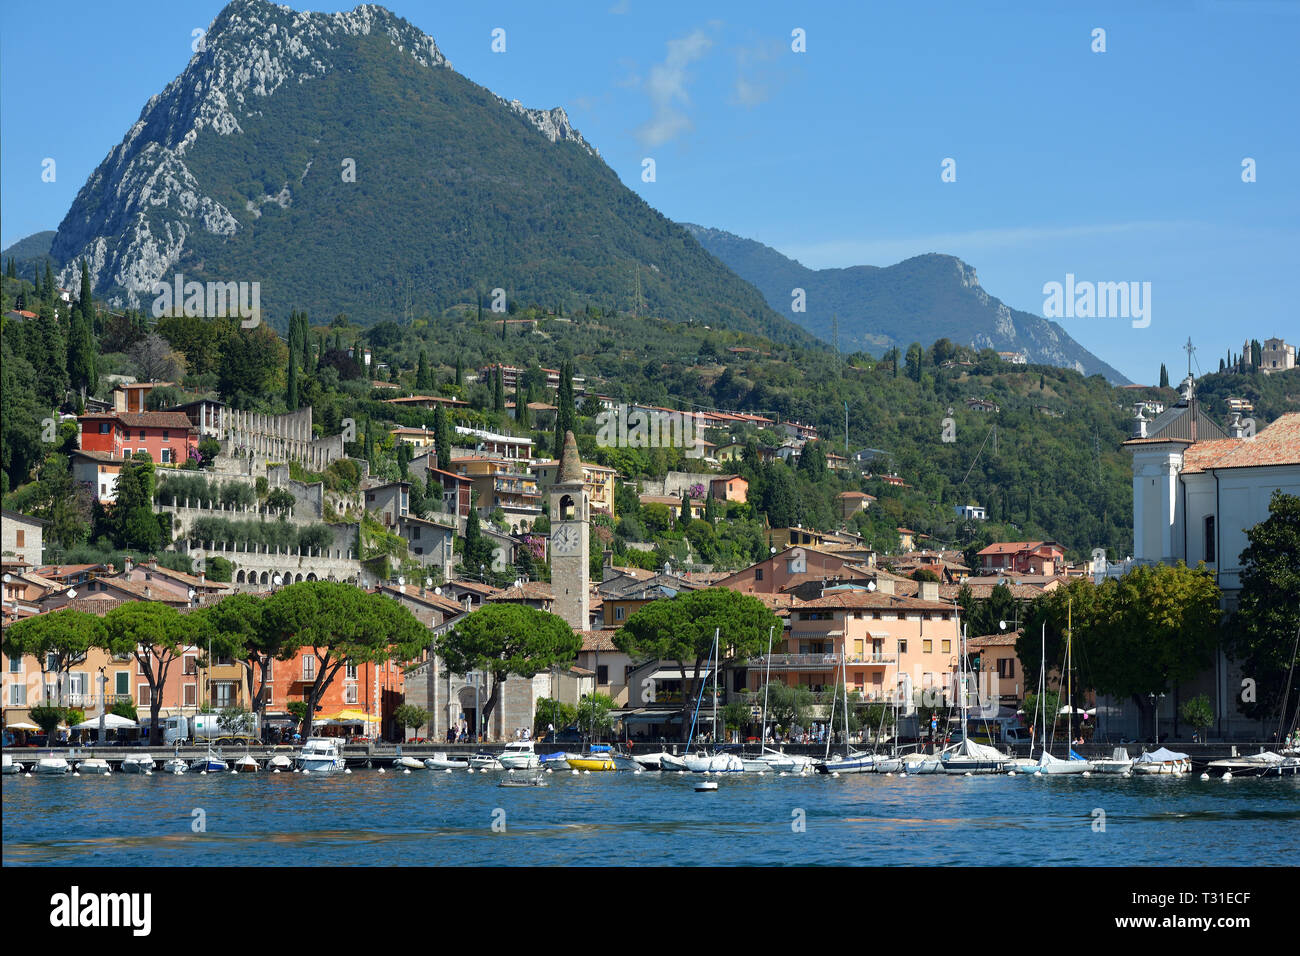 Maderno on the banks of Lake Garda - Italy. Stock Photo